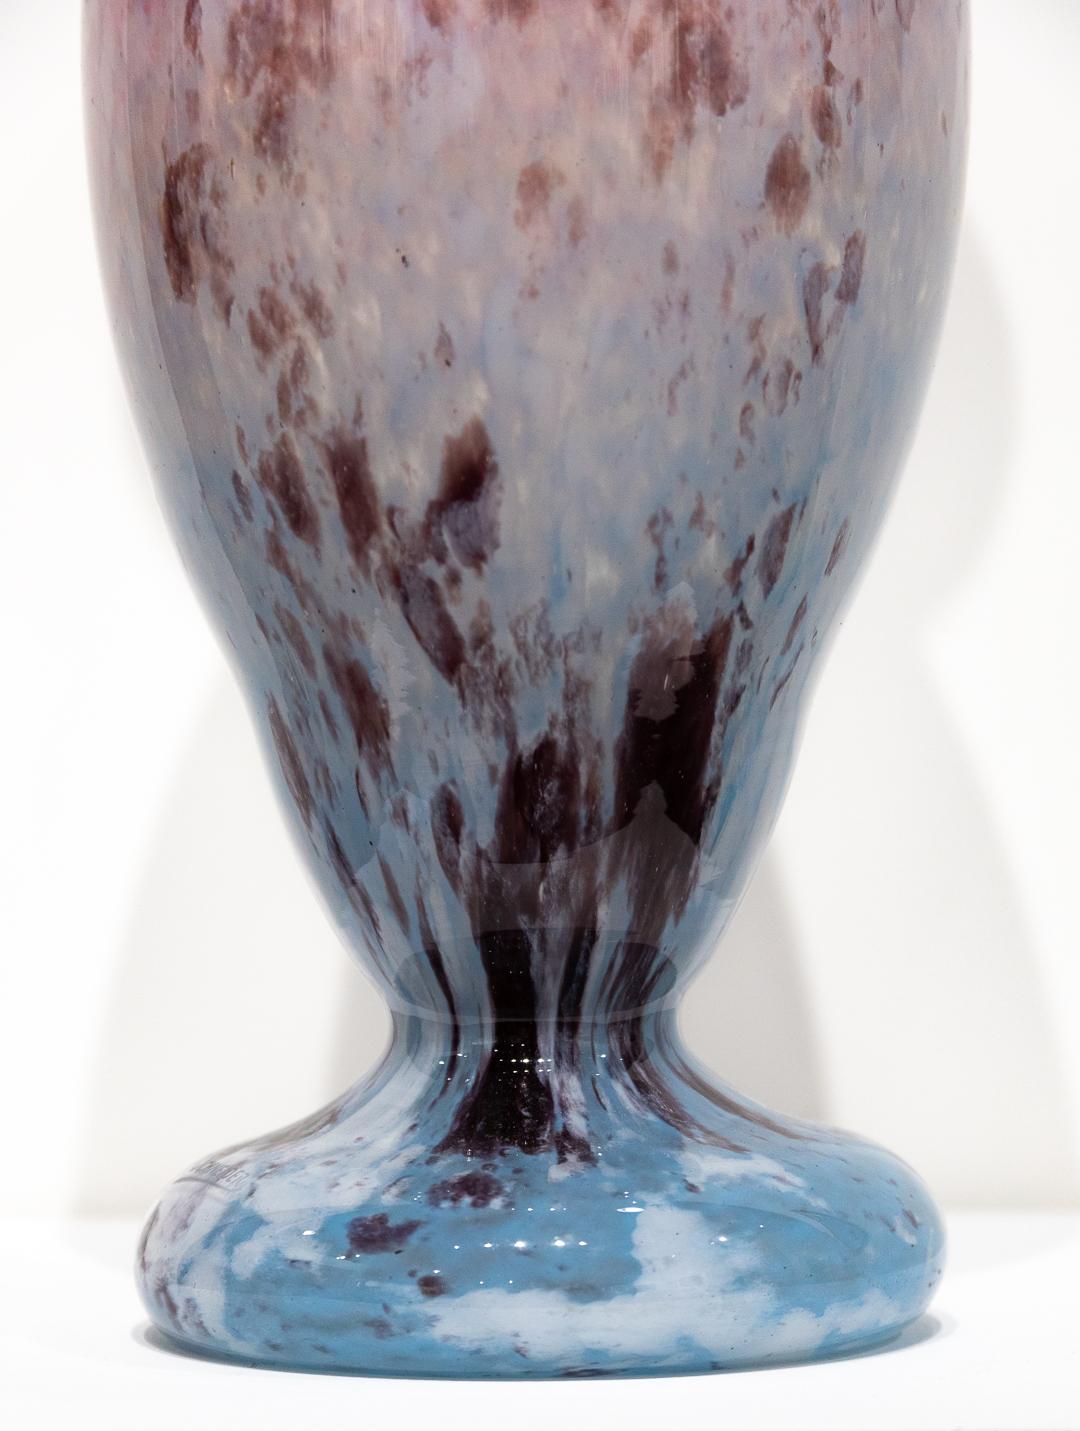 VERKAUF NUR EINE WOCHE

Diese gesprenkelte und funkelnde Glasvase ist ein exemplarisches Stück des französischen Jugendstils und wurde vom legendären Glasmacher Charles Schneider geschaffen. Die rosa und blau gesprenkelte und glitzernde Vase ist